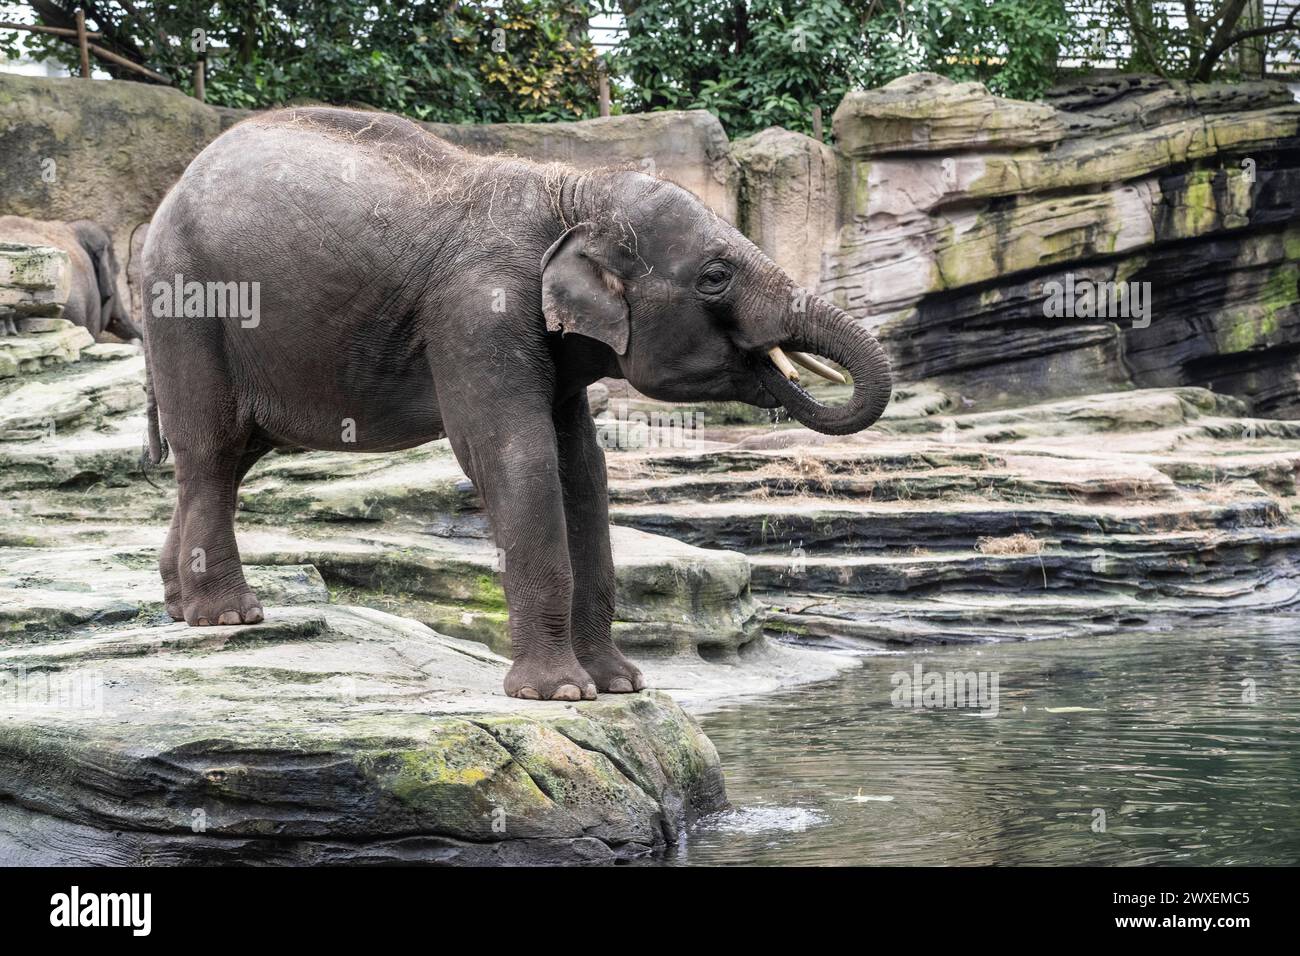 Asian elephant (Elephas maximus), Emmen Zoo, Netherlands Stock Photo